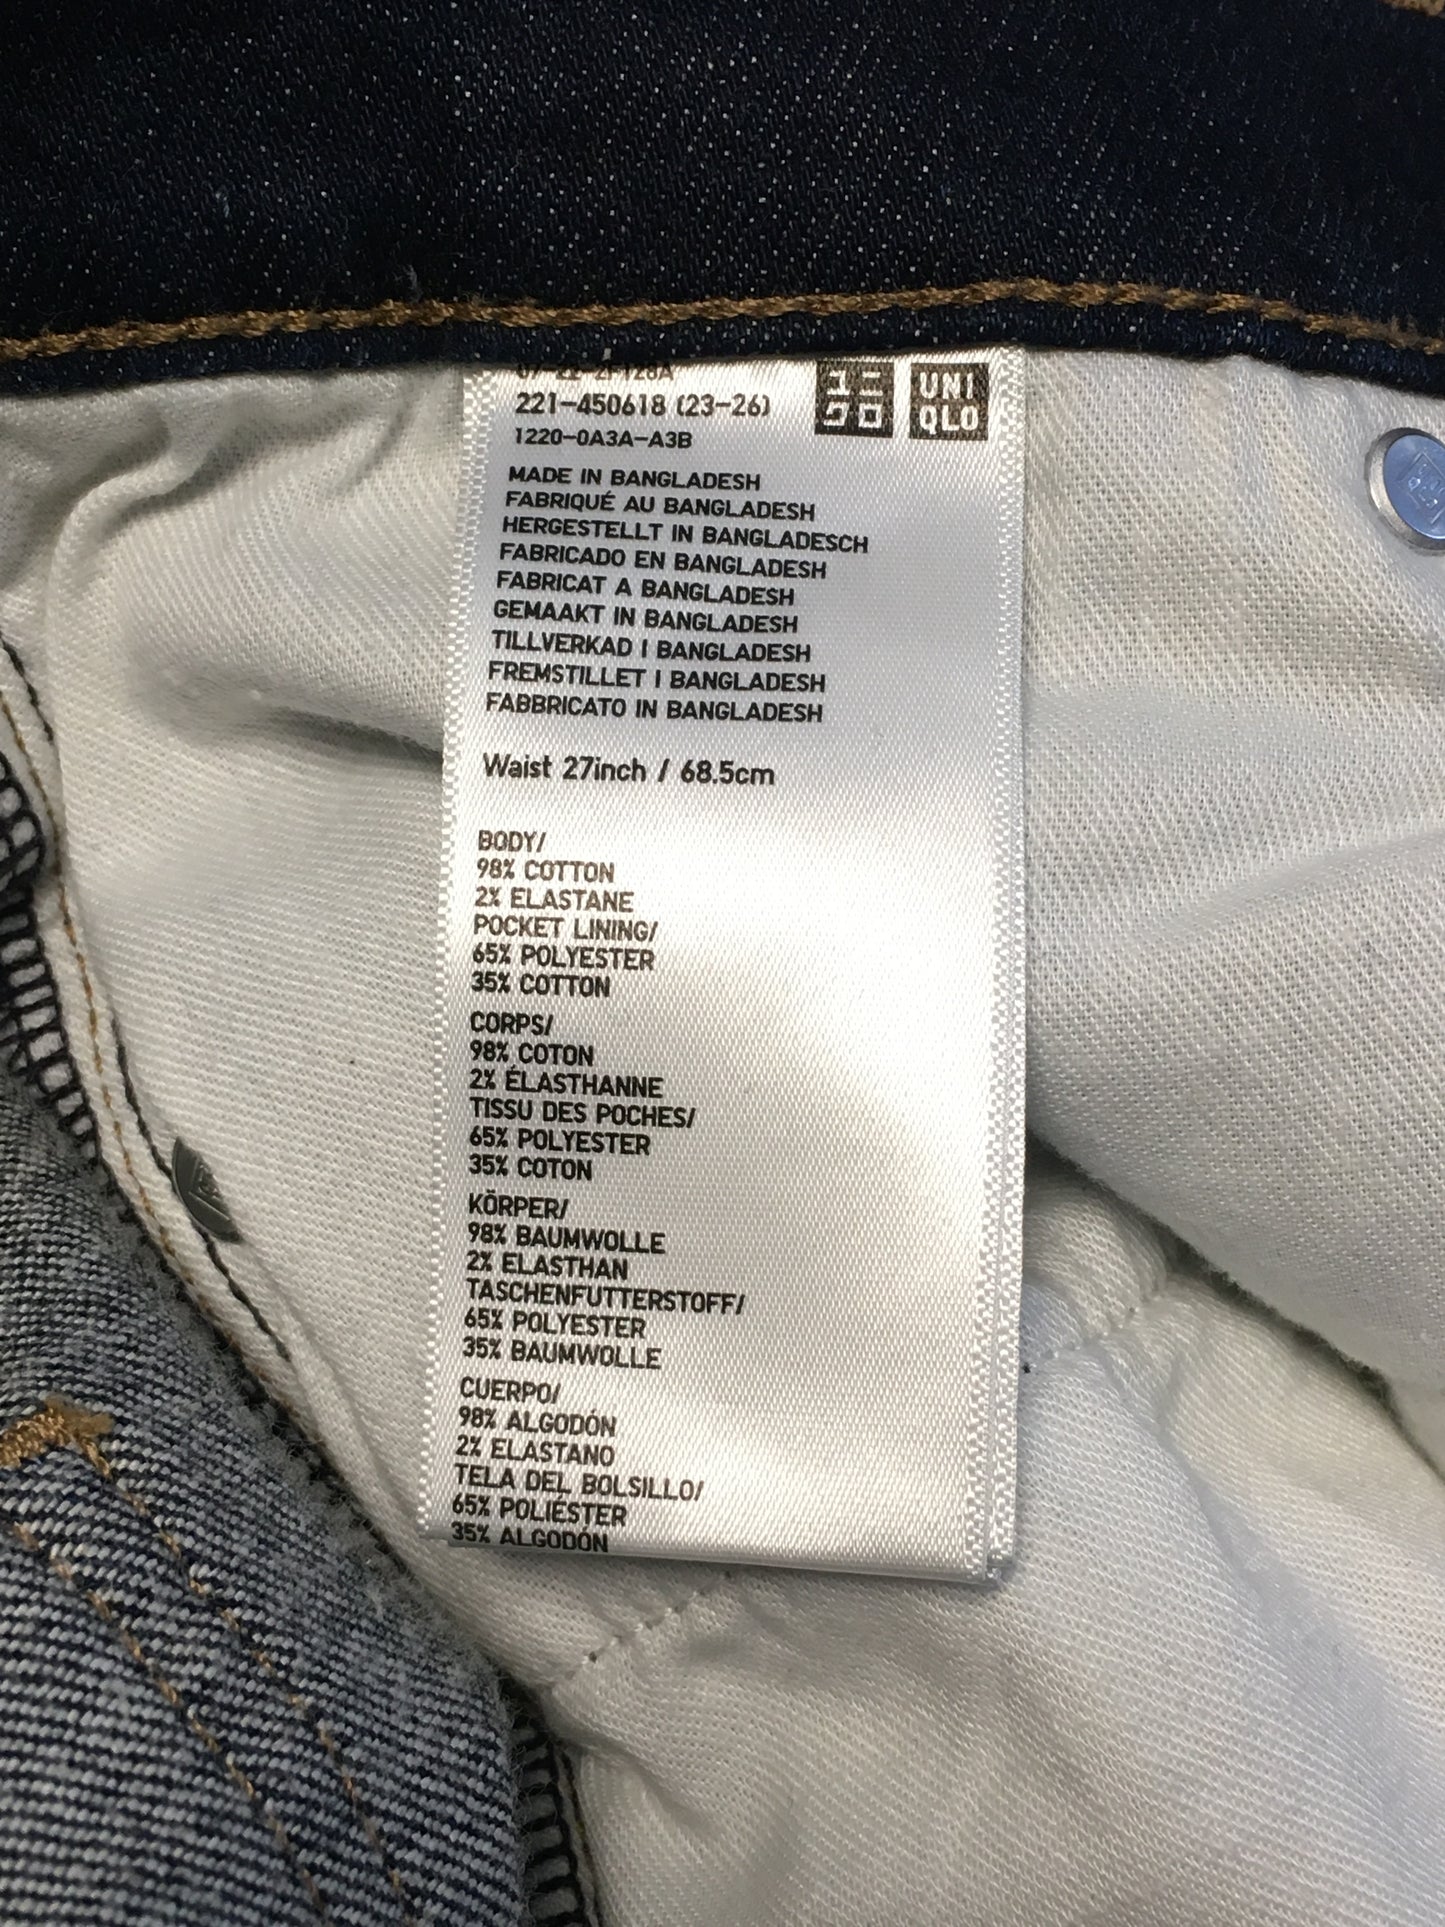 Uniqlo-jeans